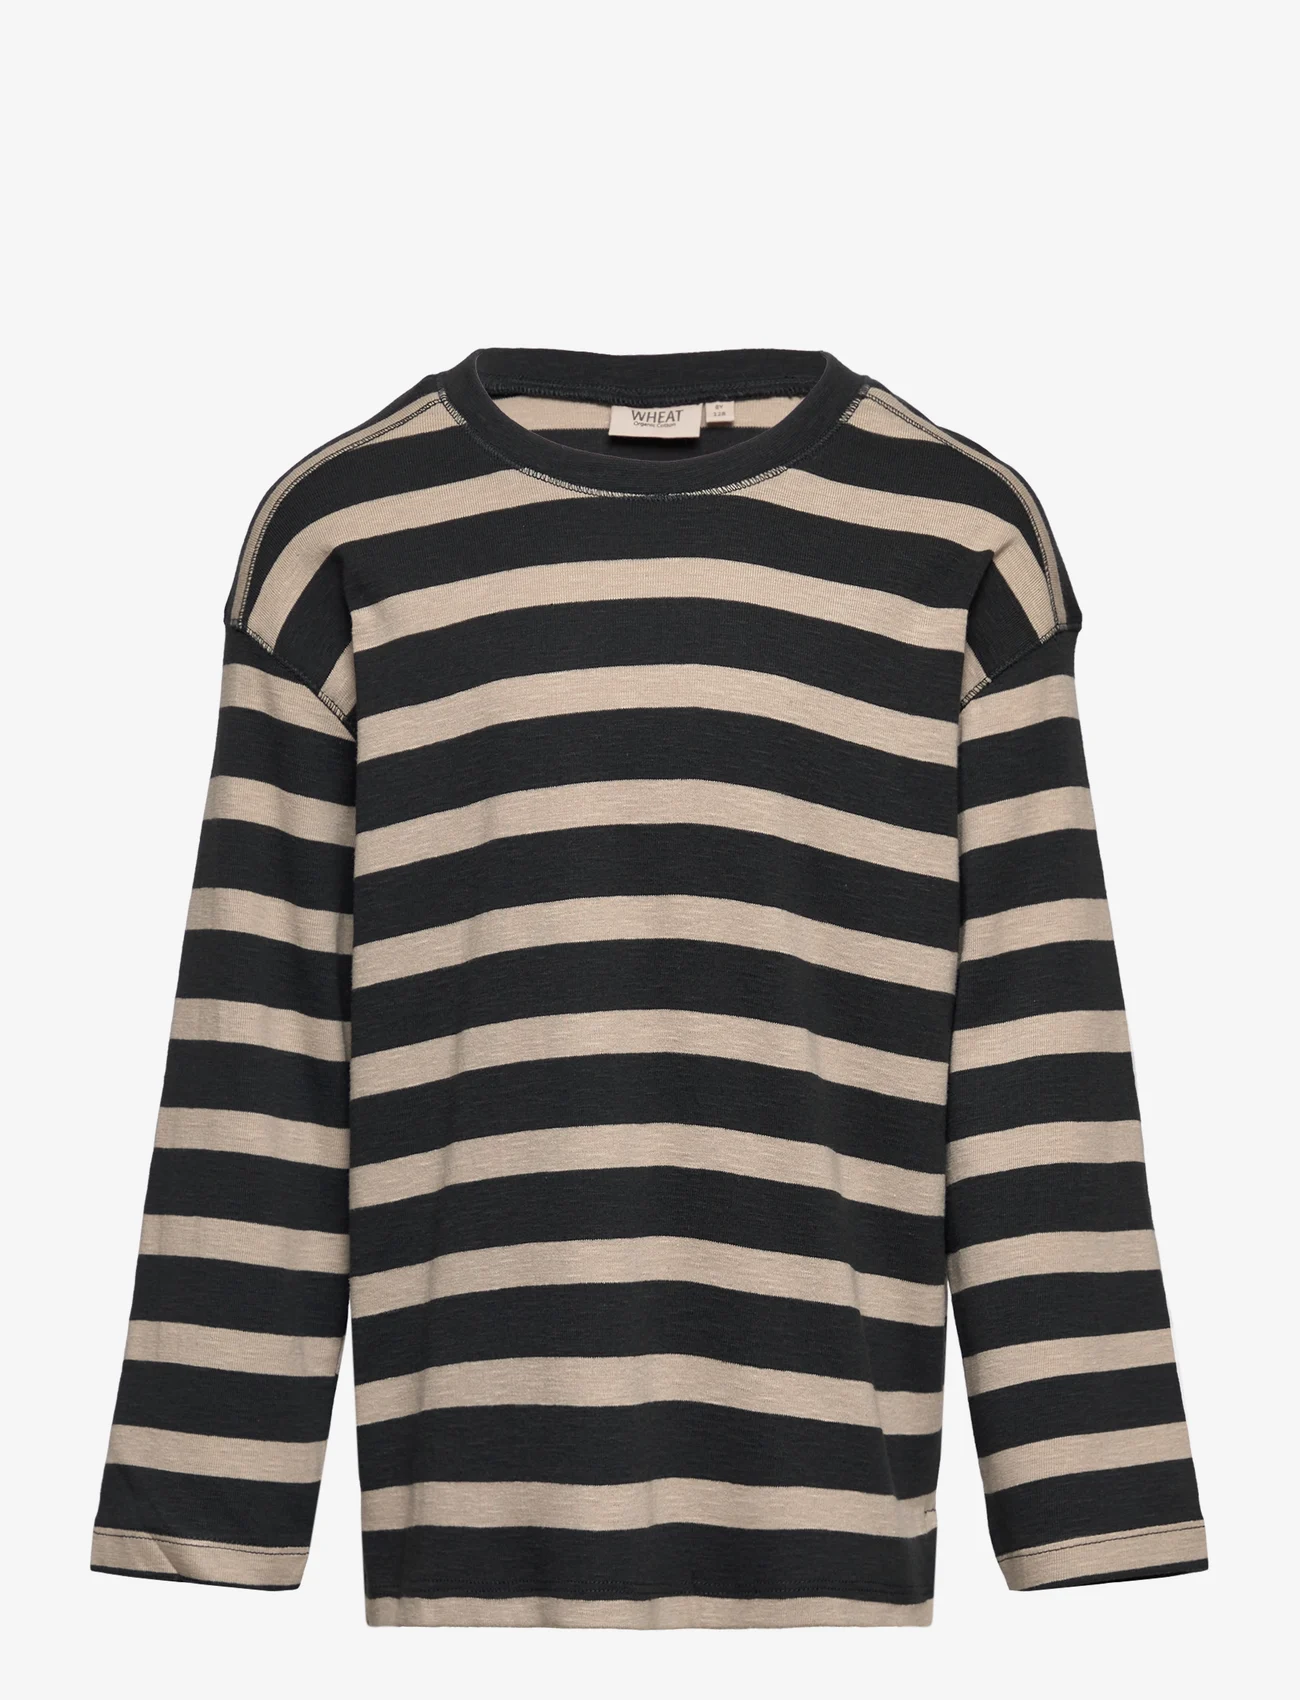 Wheat - T-Shirt Malthe - langärmelige - dark stripe - 0